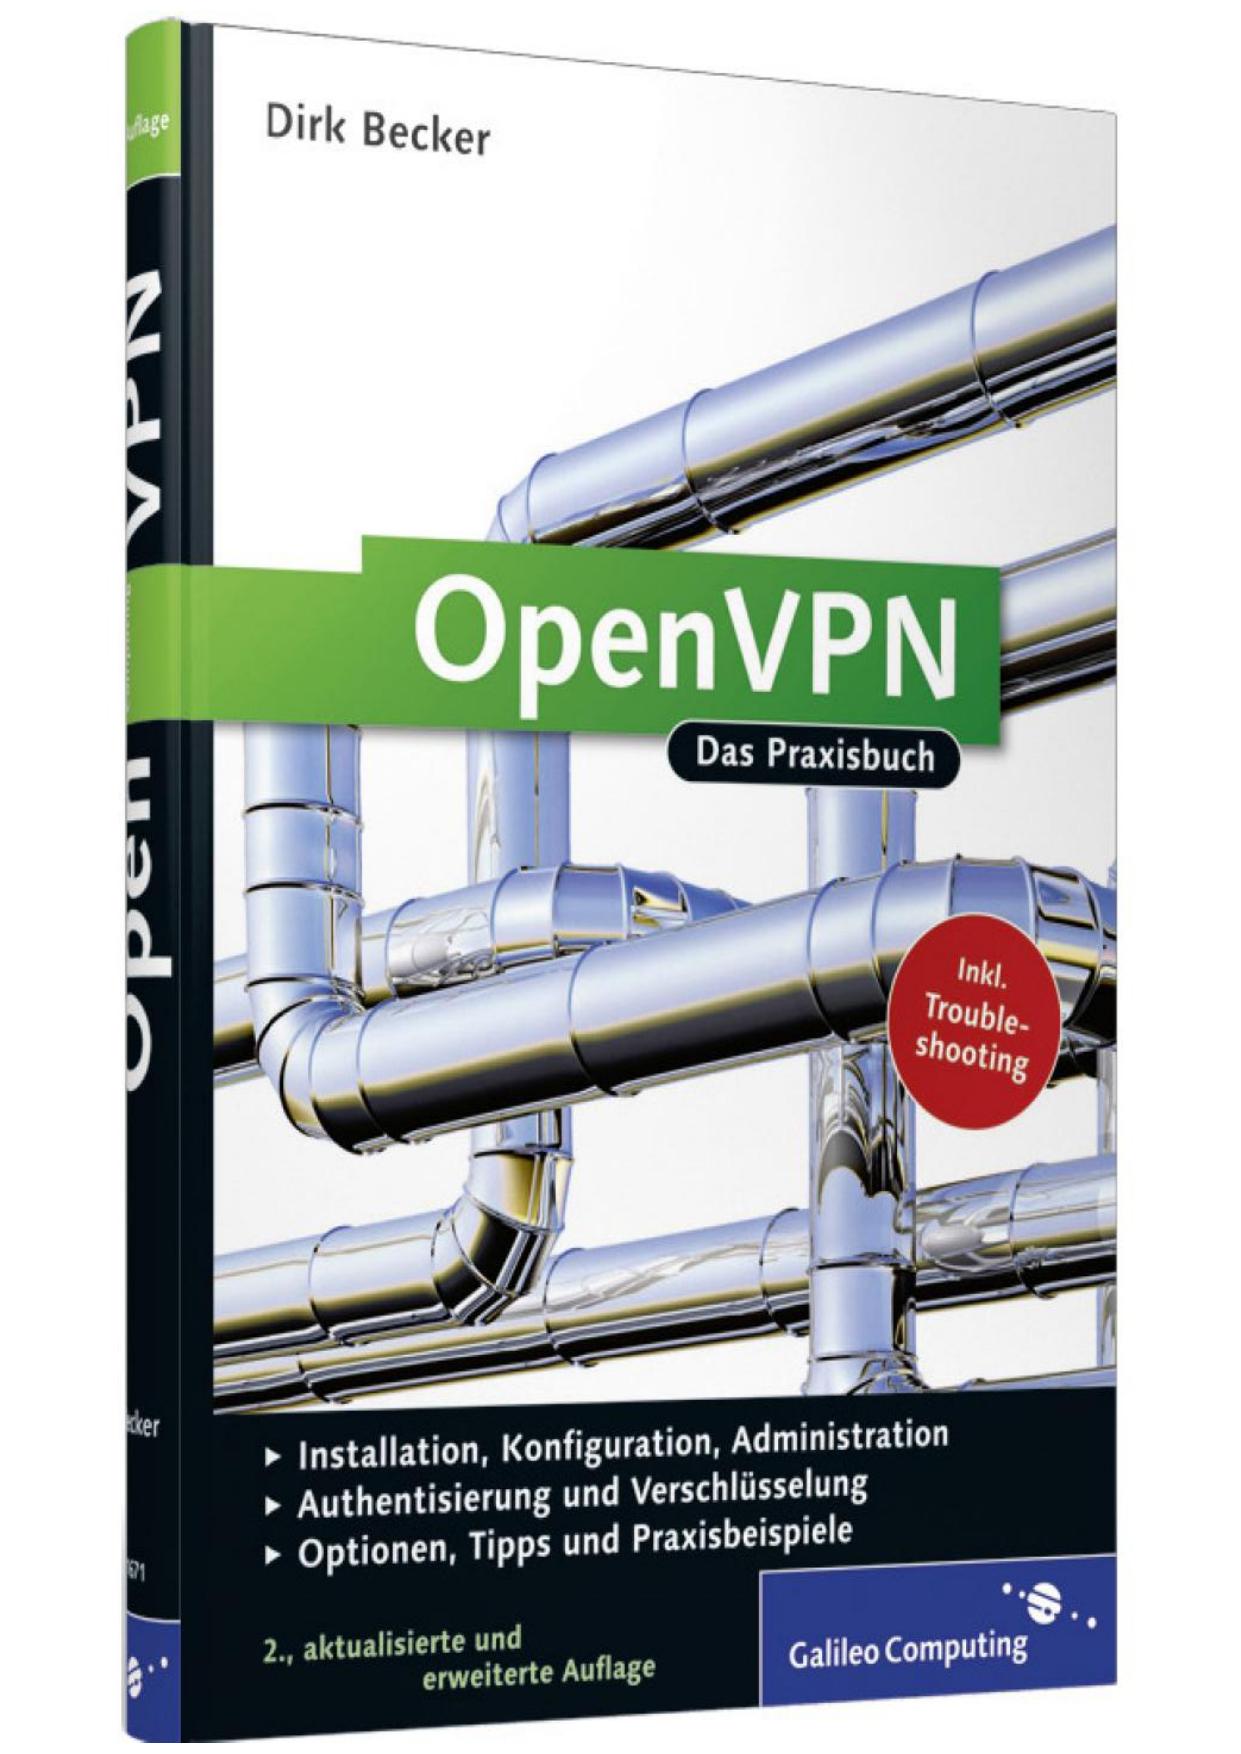 OpenVPN: das Praxisbuch ; [Installation, Konfiguration, Administration ; Authentisierung und Verschlüsselung ; Optionen, Tipps und Praxisbeispiele ; inkl. Troubleshooting]